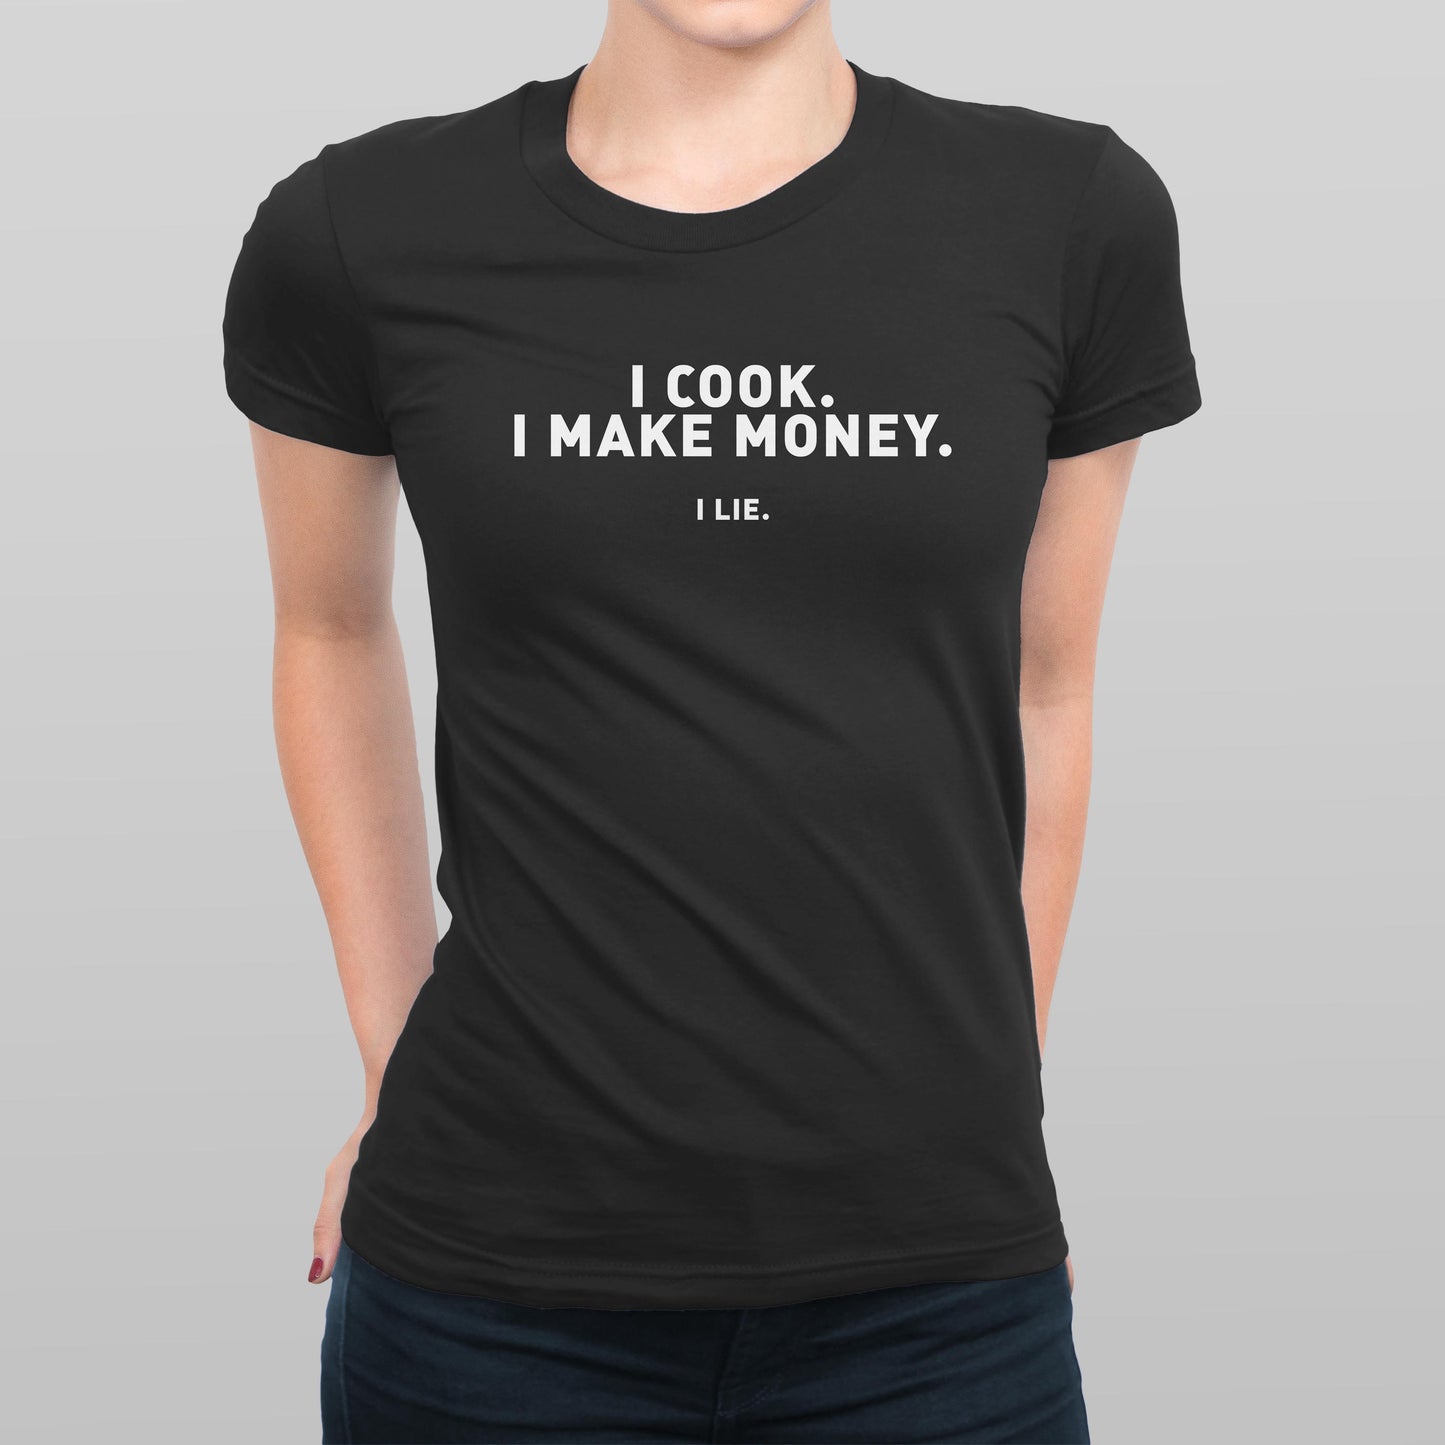 I Lie Women's T-shirt